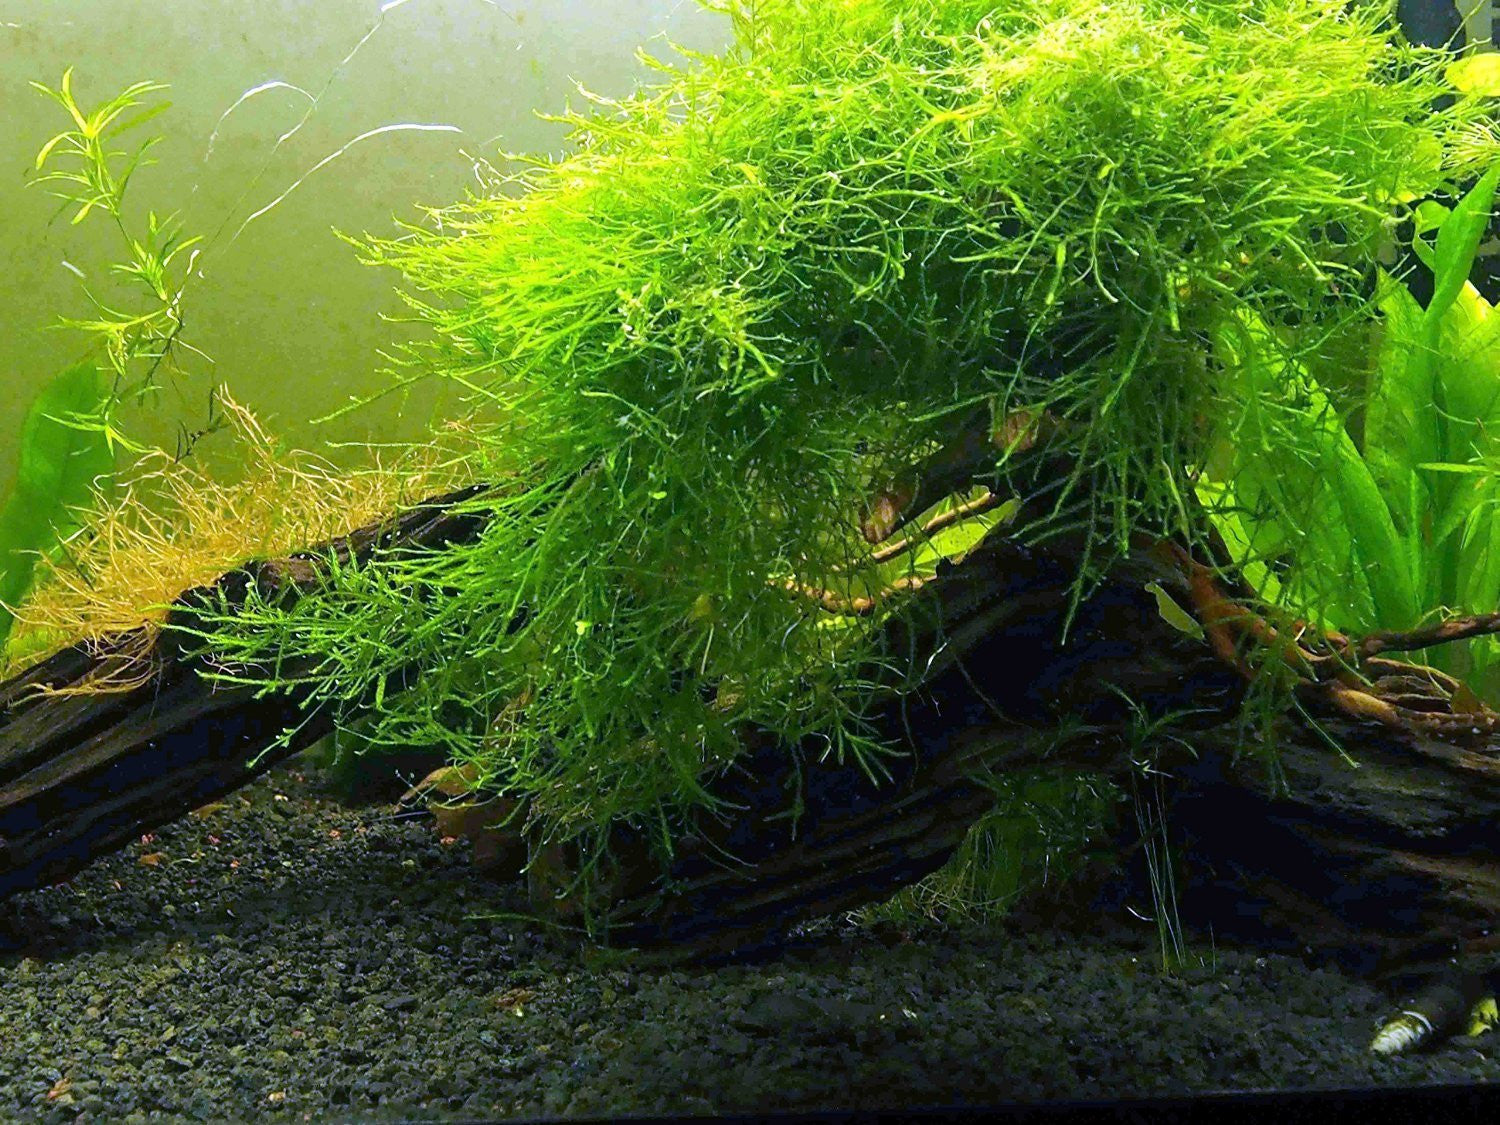 Java Moss Easy Beginner Aquarium Moss Plant for Planted Tank – Glass Aqua